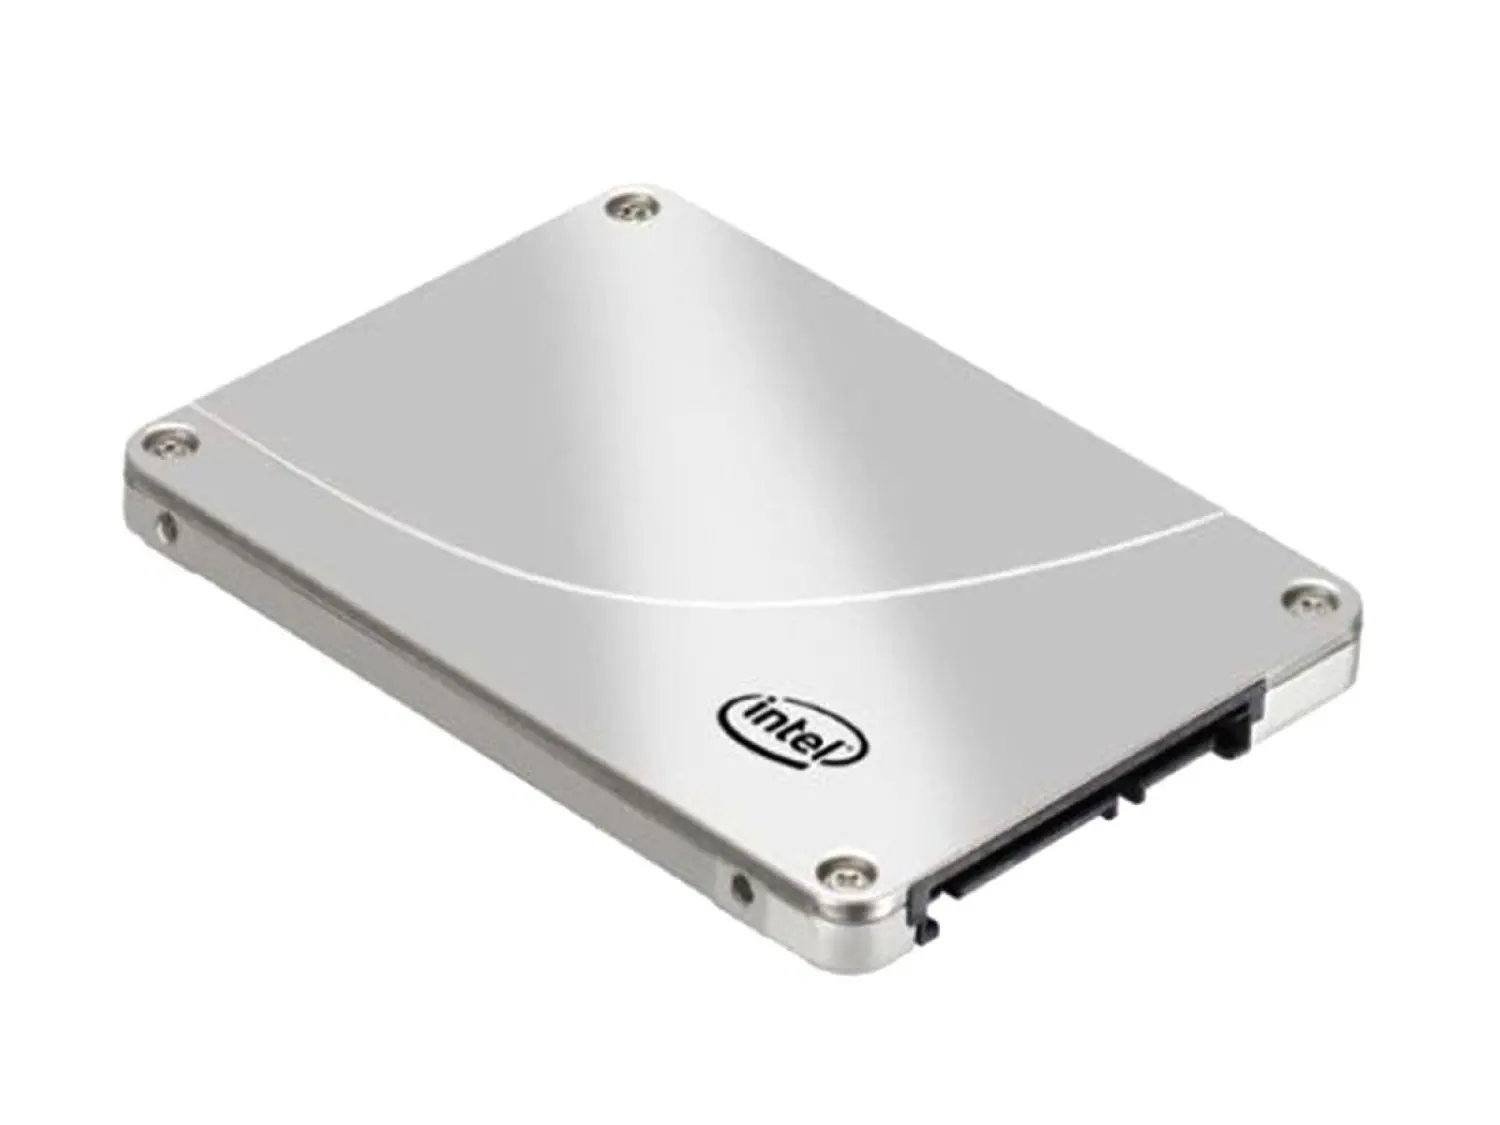 Cheap 160gb Intel Ssd, find 160gb Intel Ssd deals on line at Alibaba.com